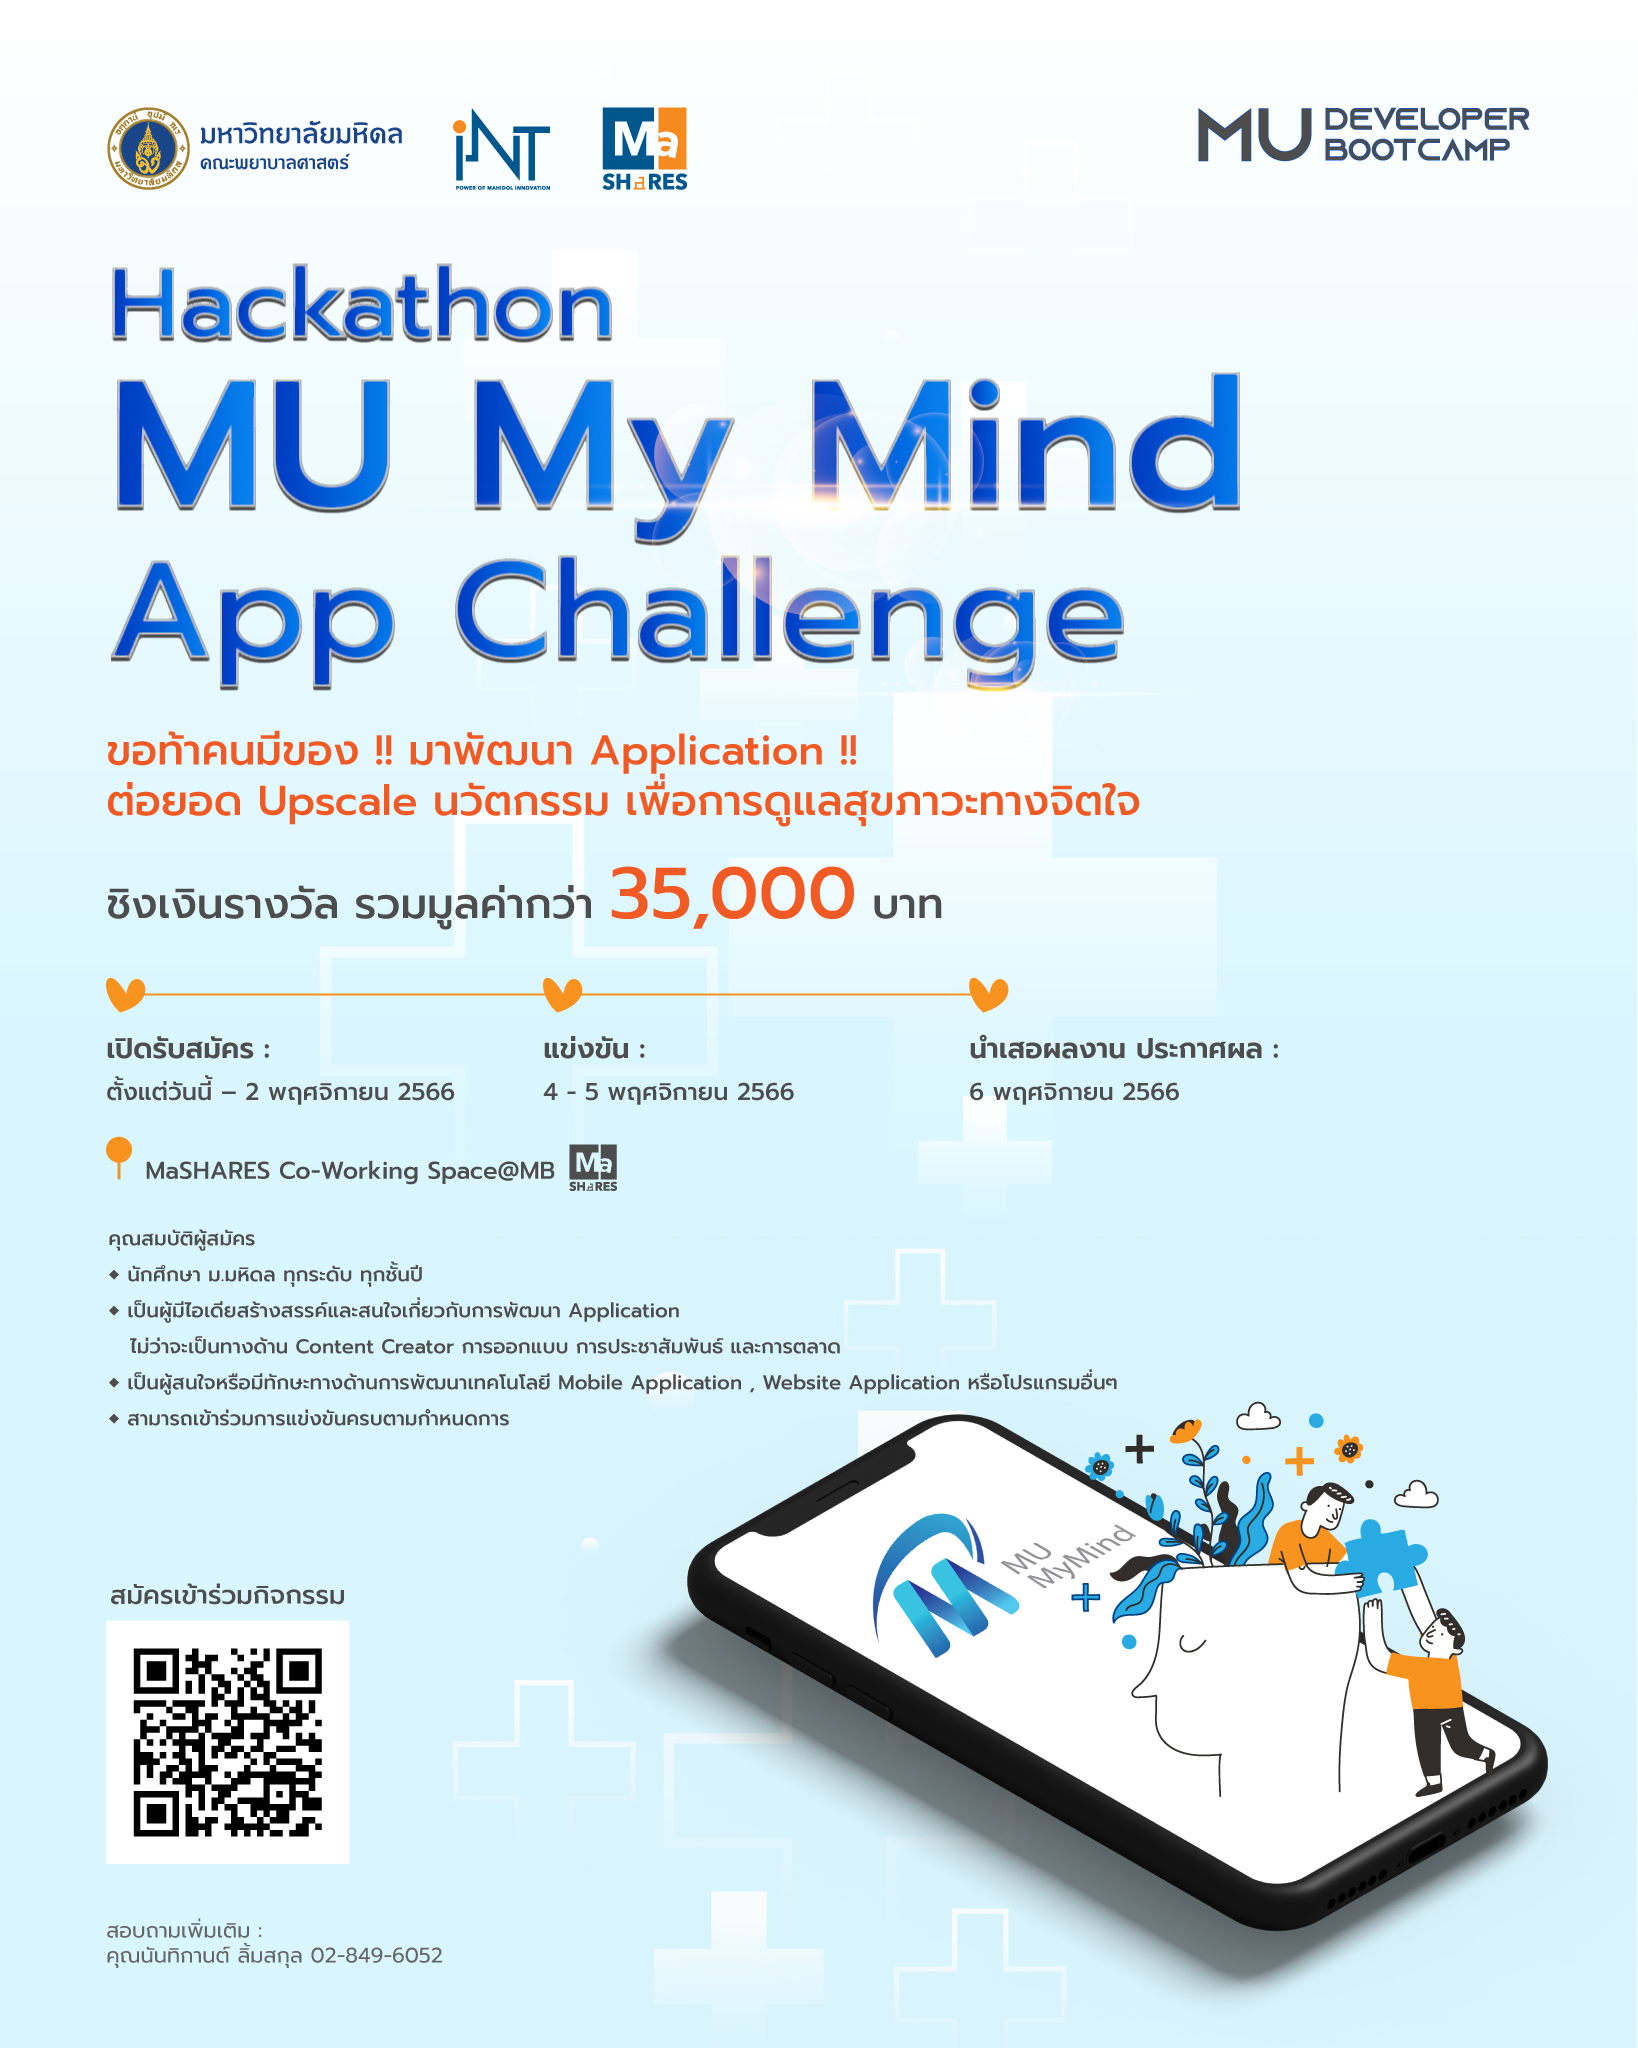 Hackathon : MU My Mind App Challenge